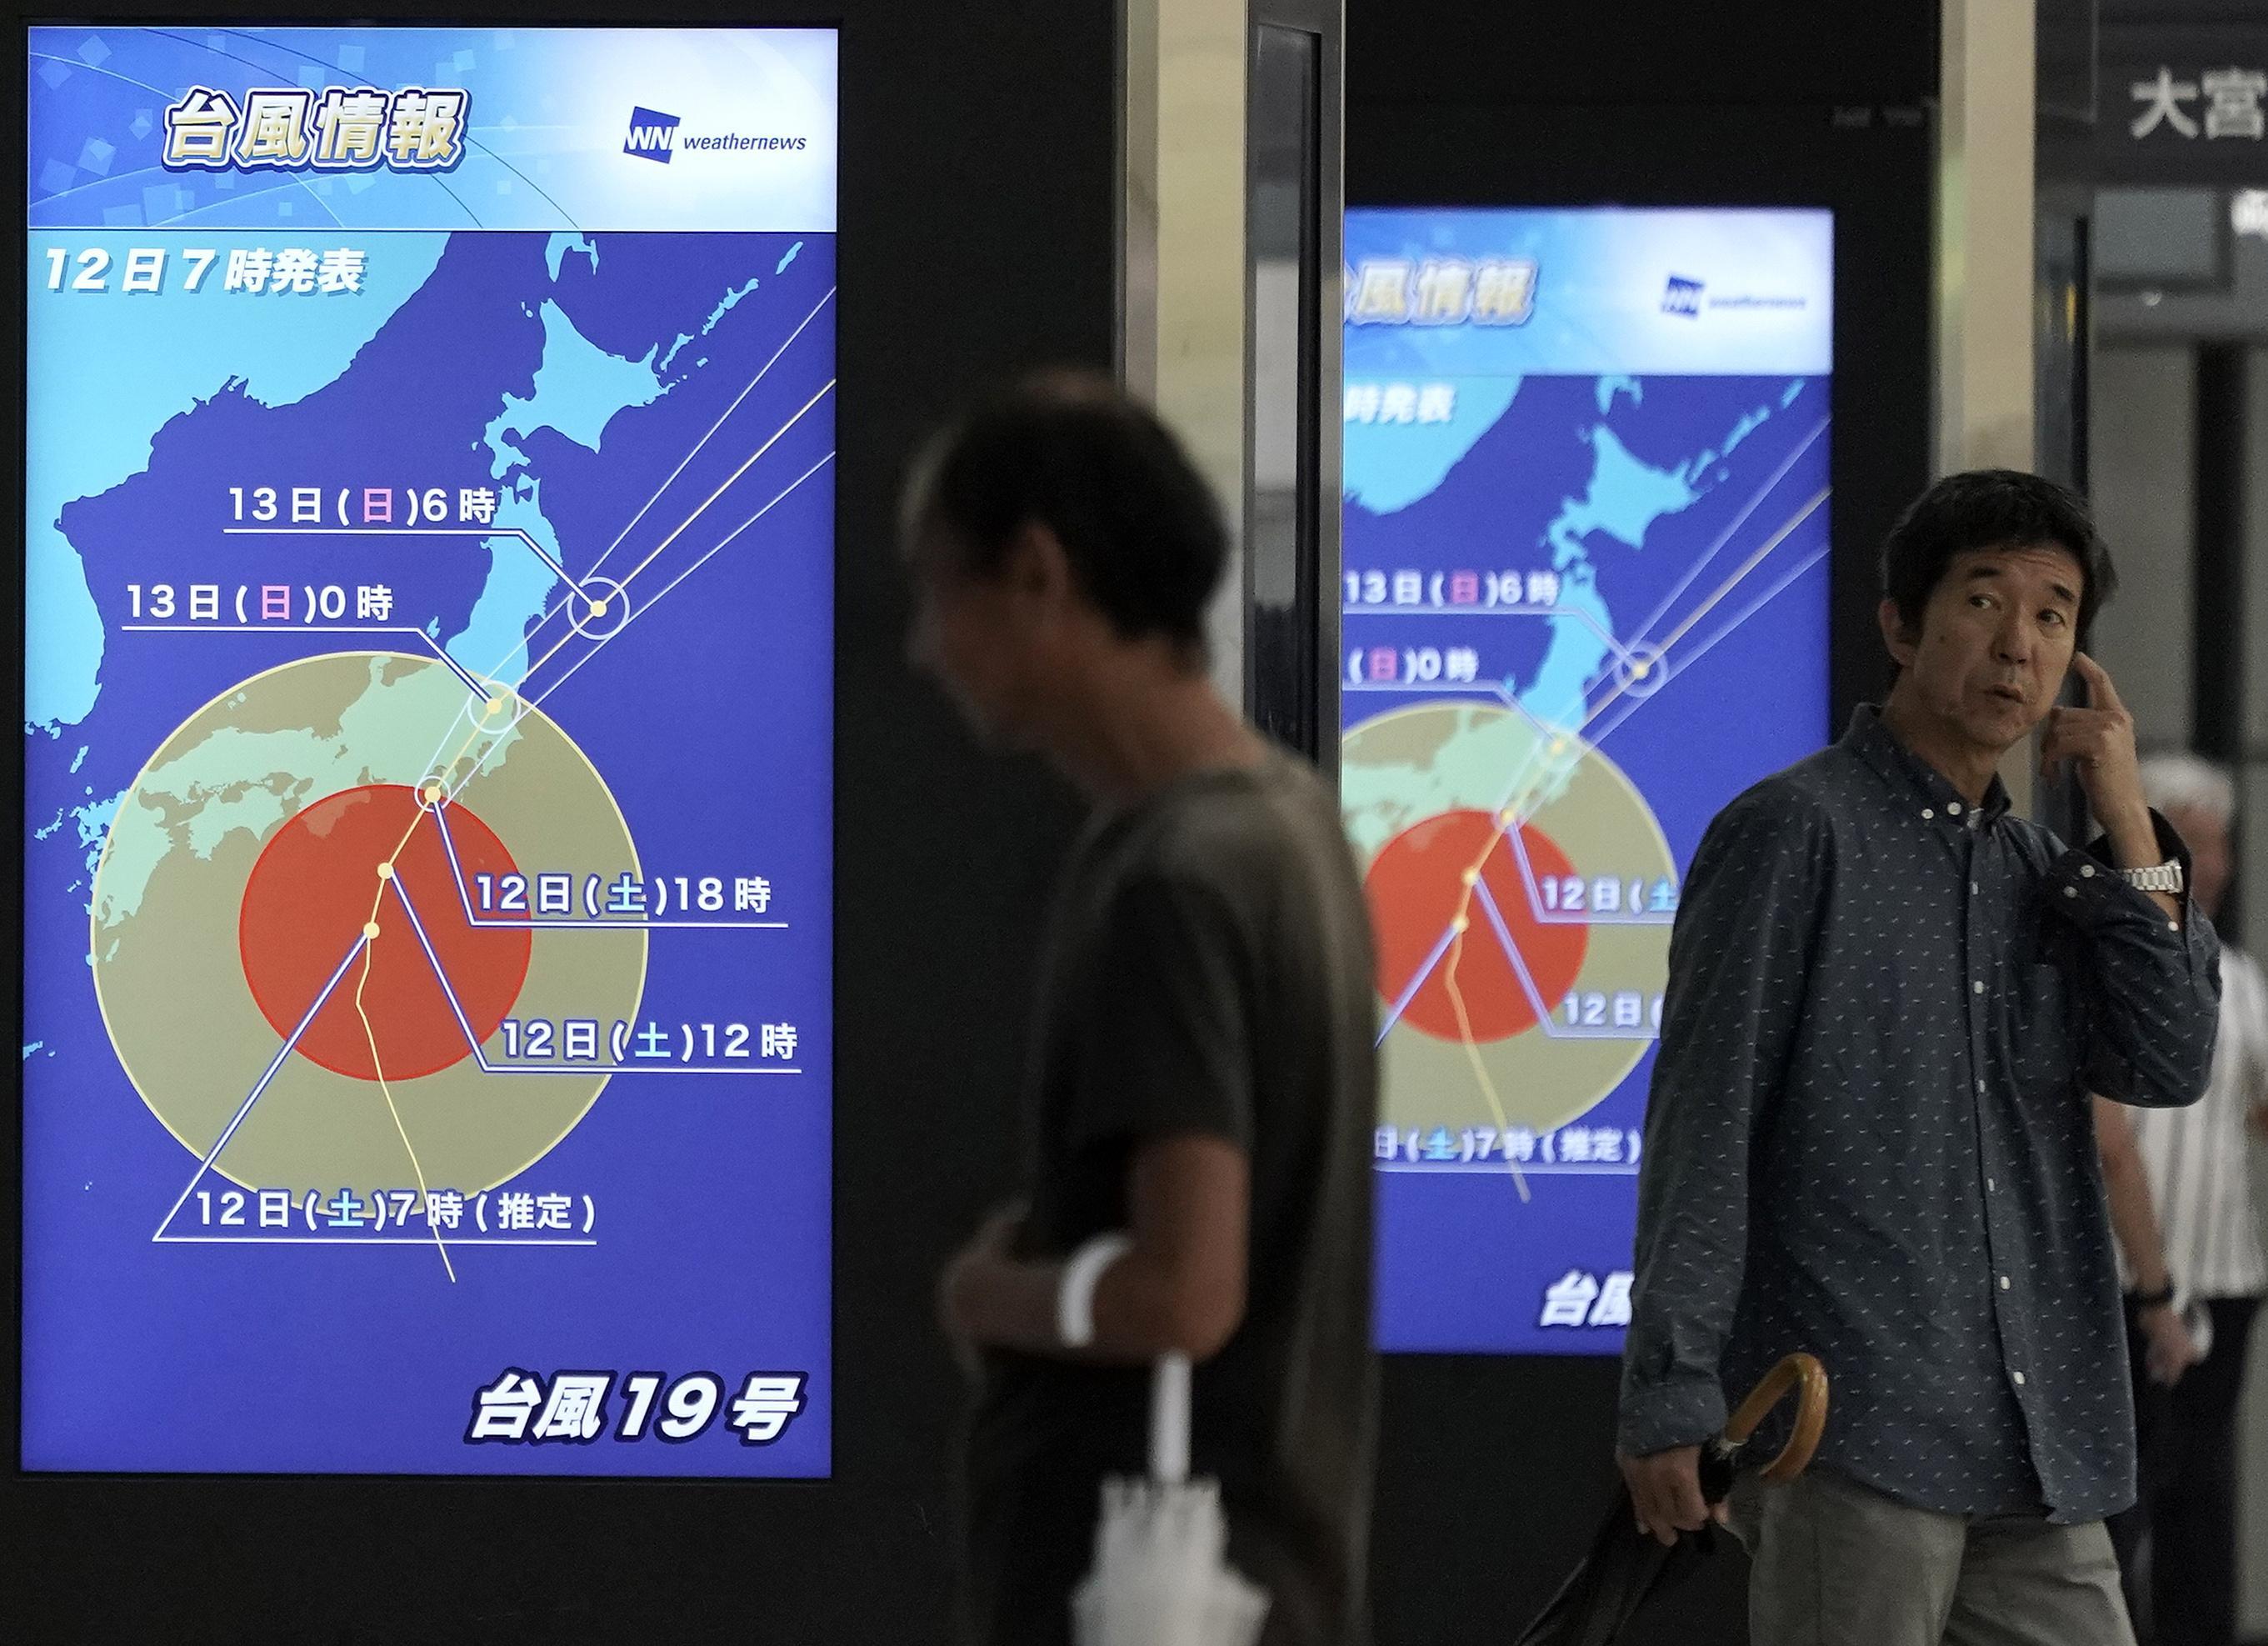 Passeggeri in attesa del treno sono davanti ad alcuni display che mostrano l'intensità del tifone